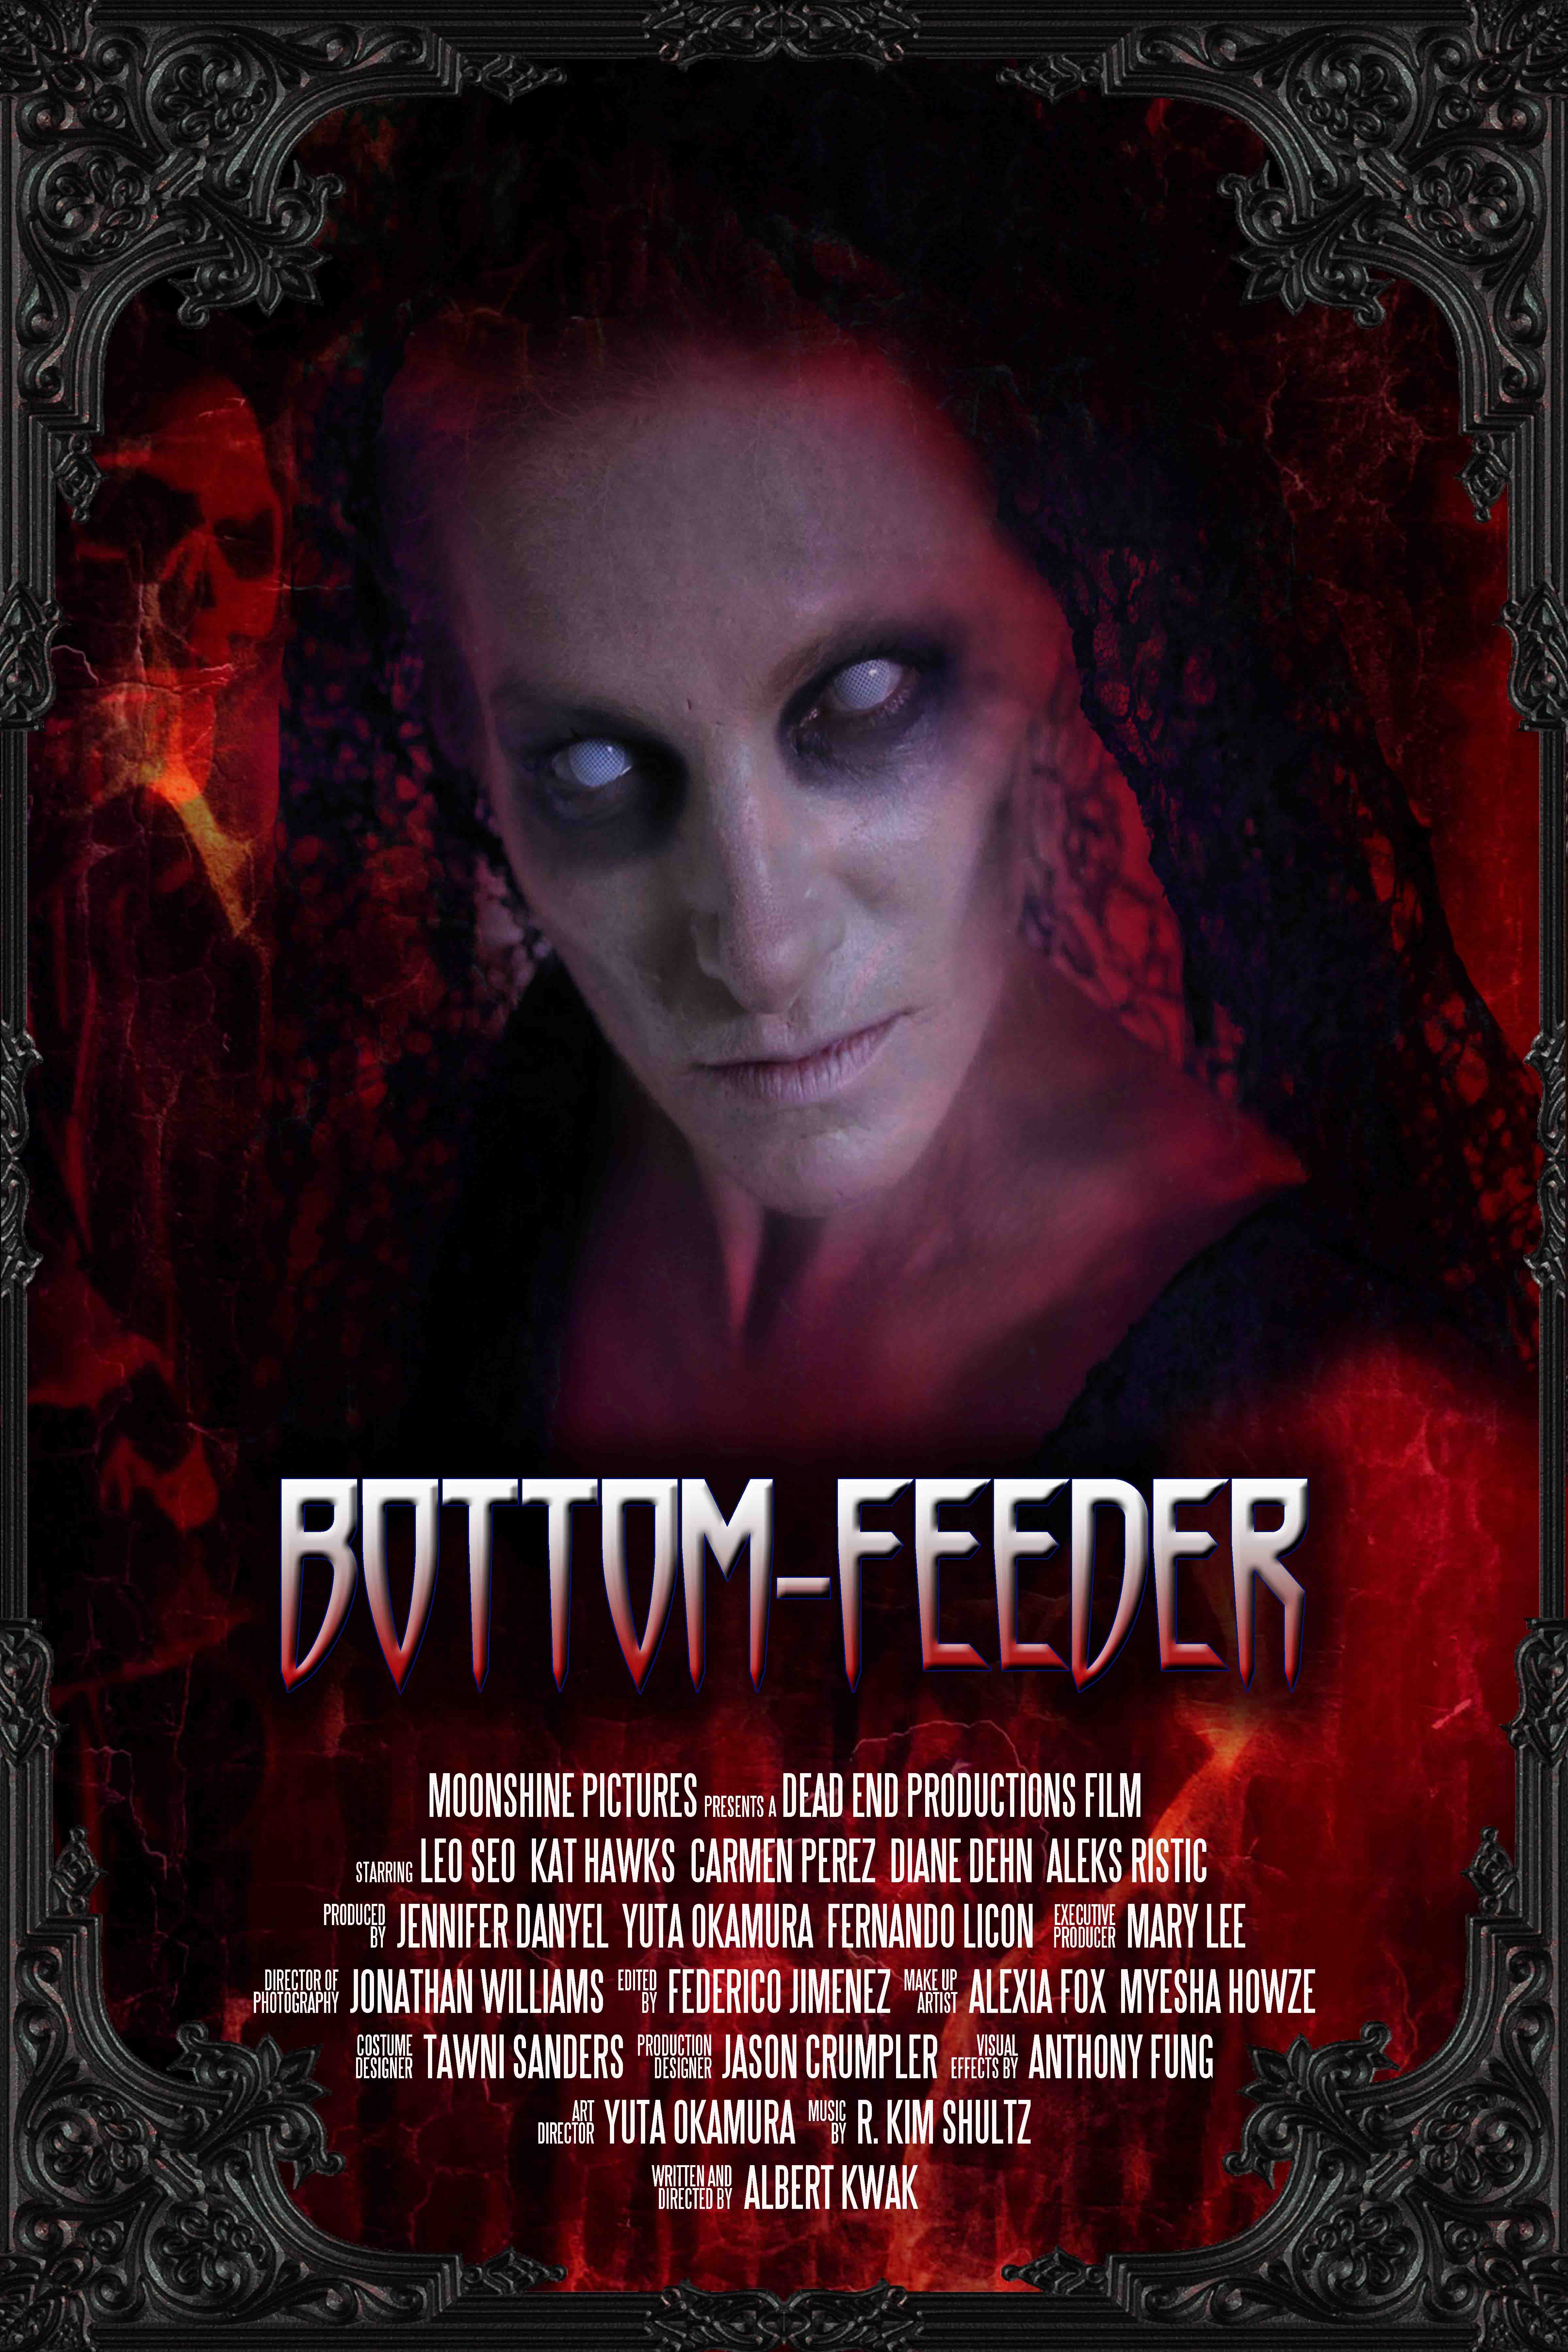 Bottom-feeder